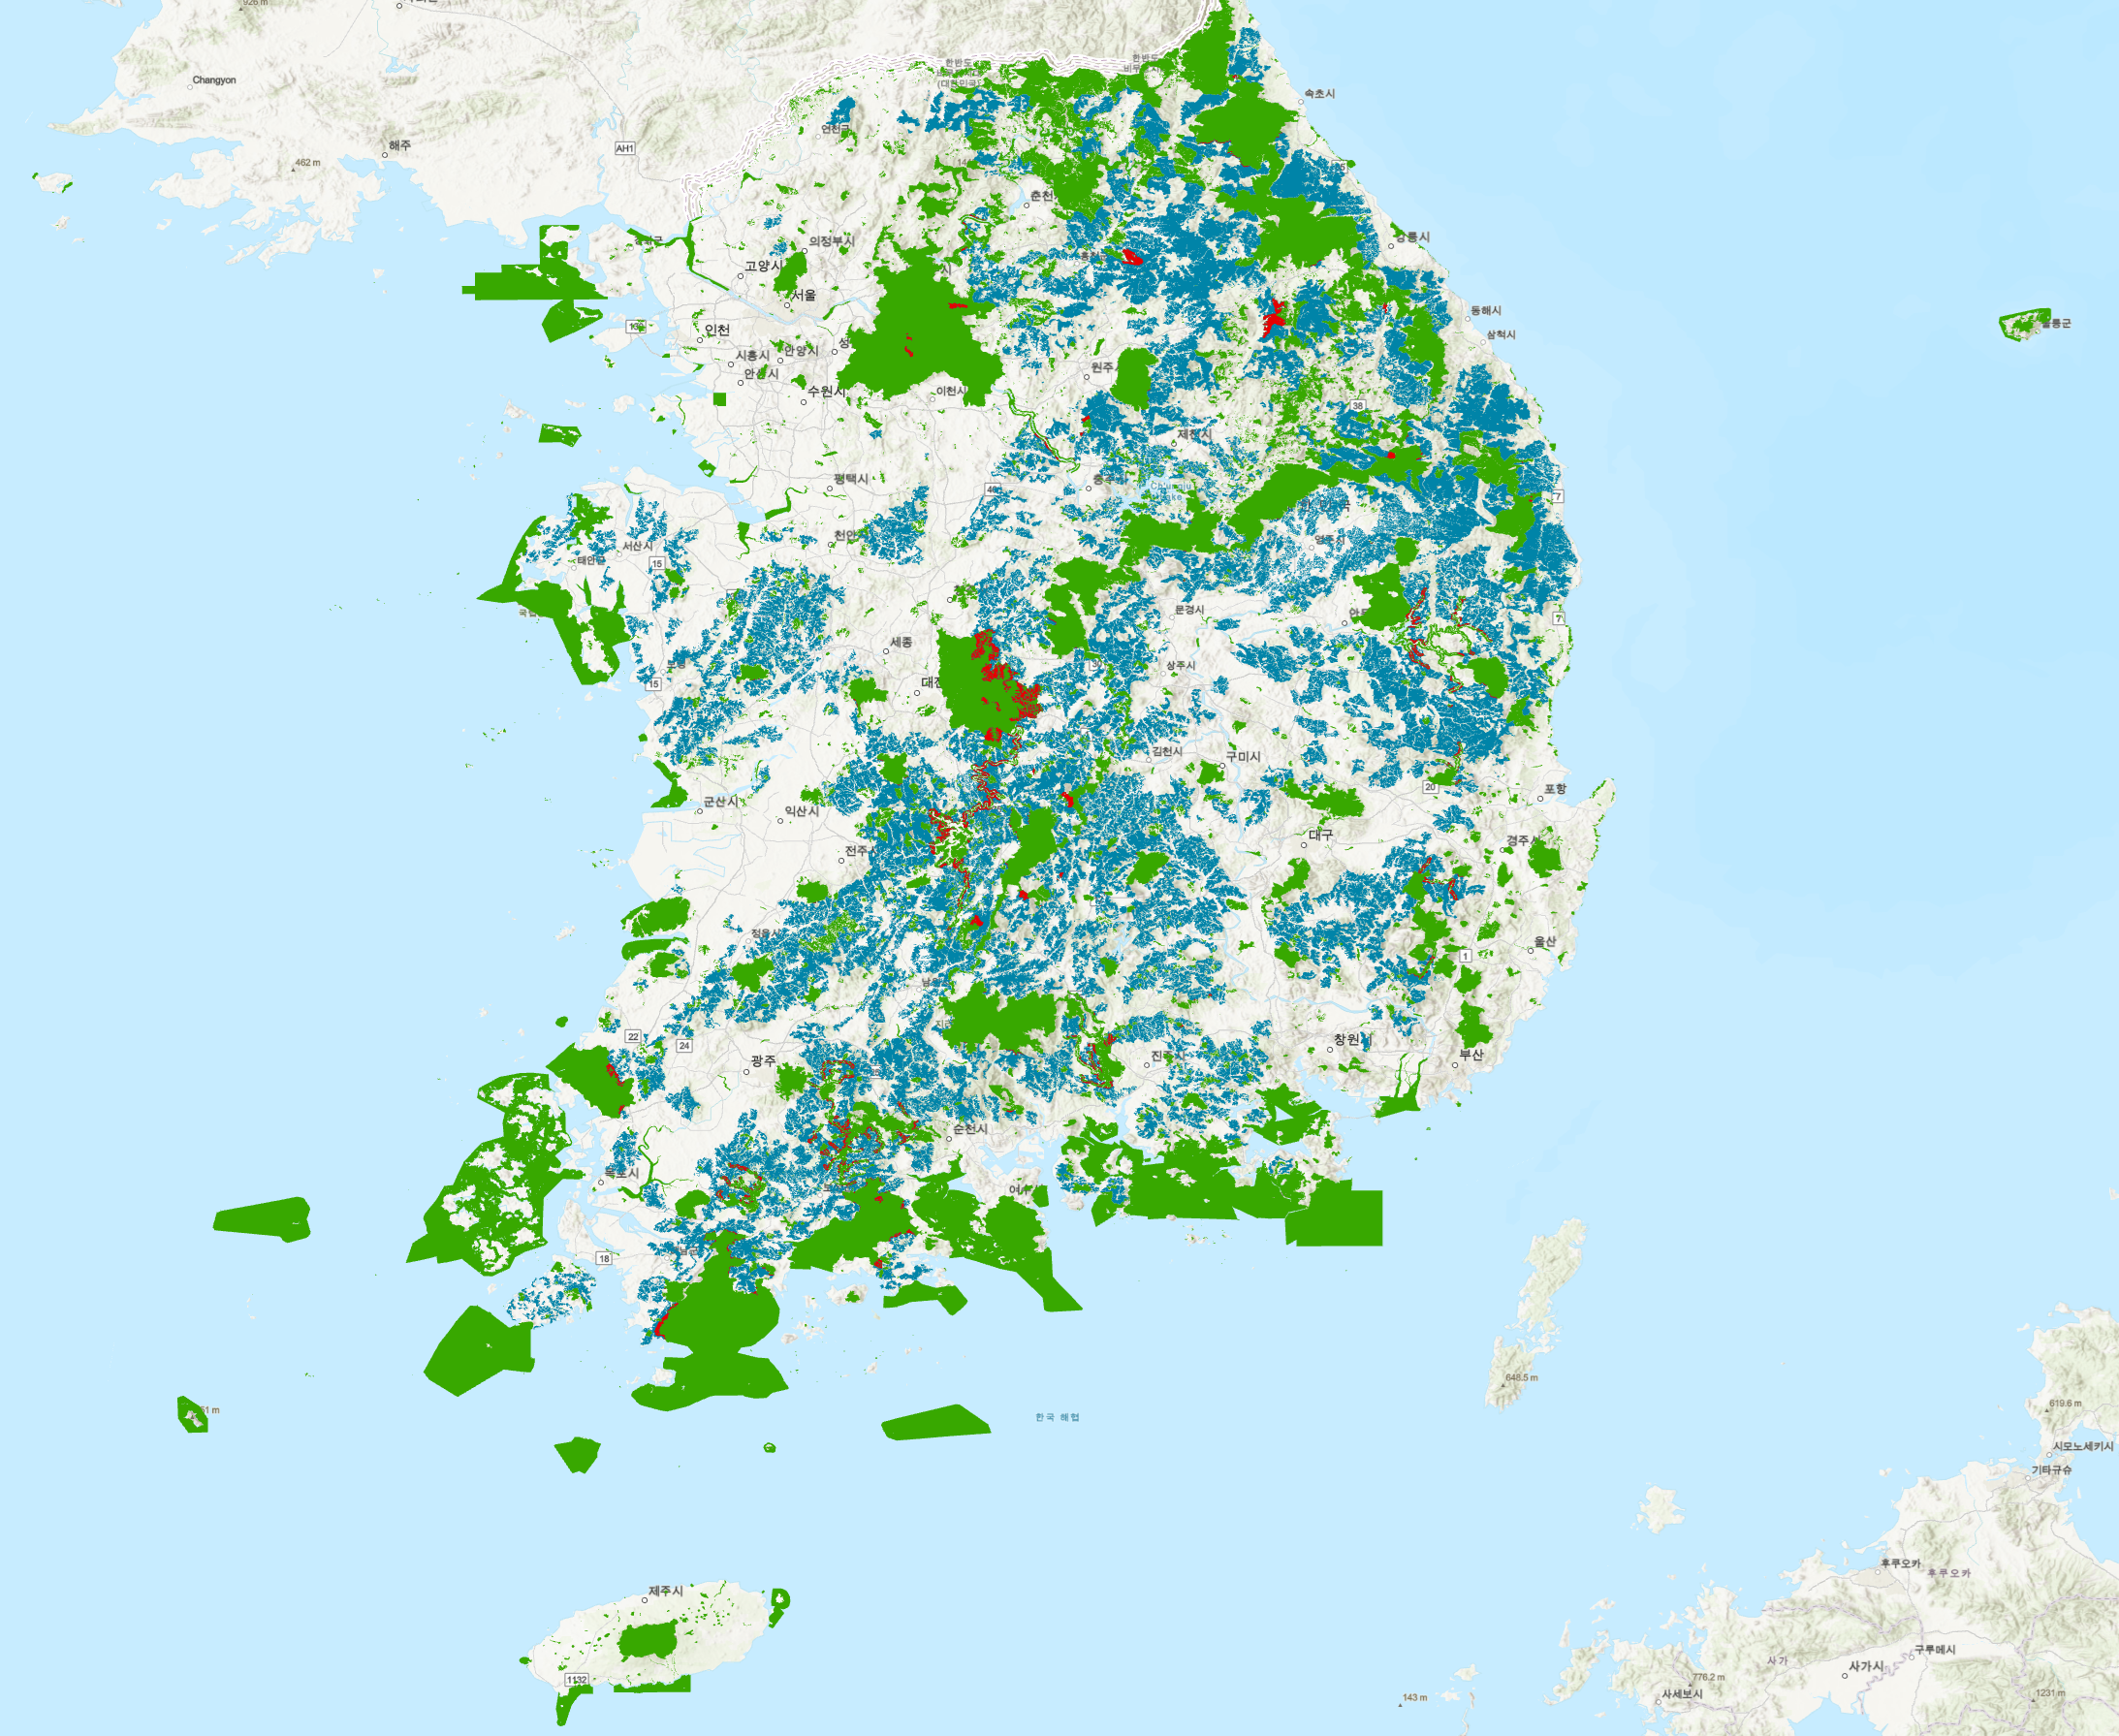 녹색 : 국내 보호지역 / 청색 : 경제림 육성단지 / 적색 : 보호지역과 경제림 육성단지 중첩지역